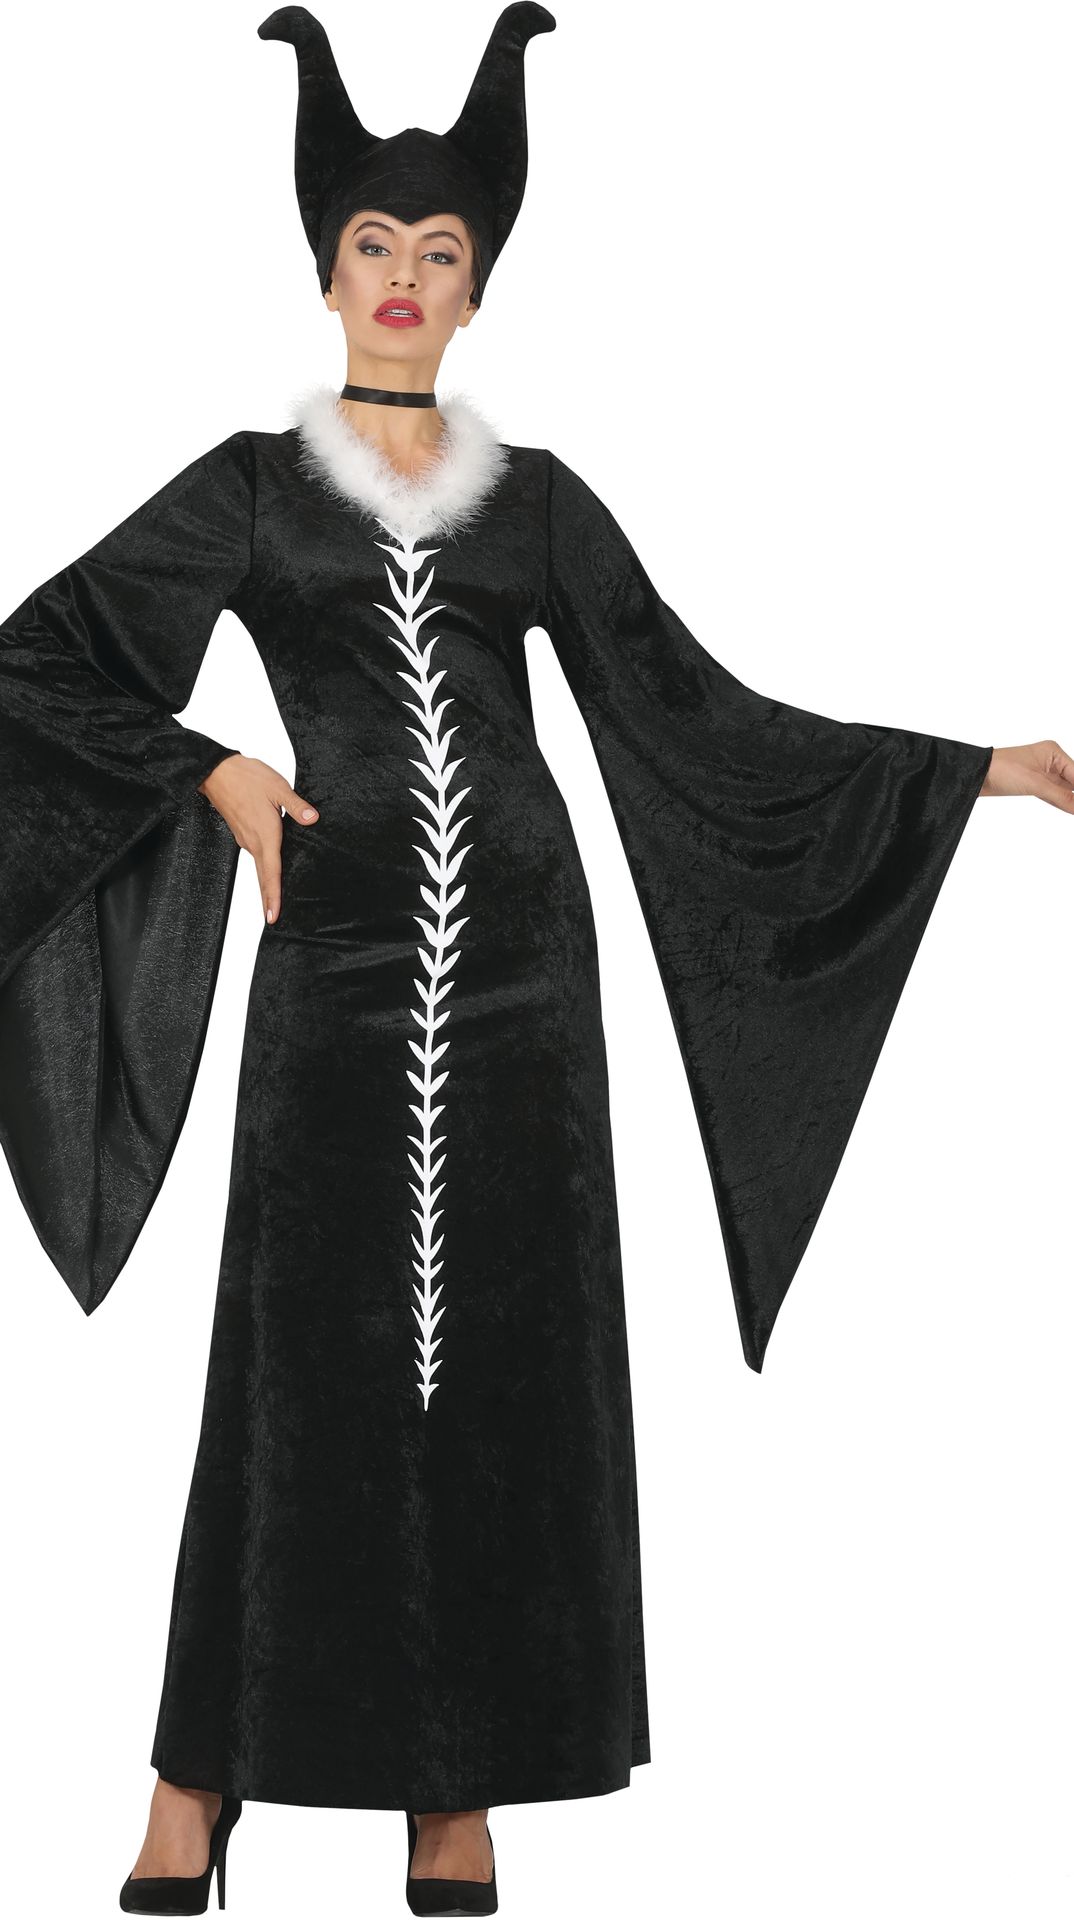 Maleficent jurk vrouw zwart